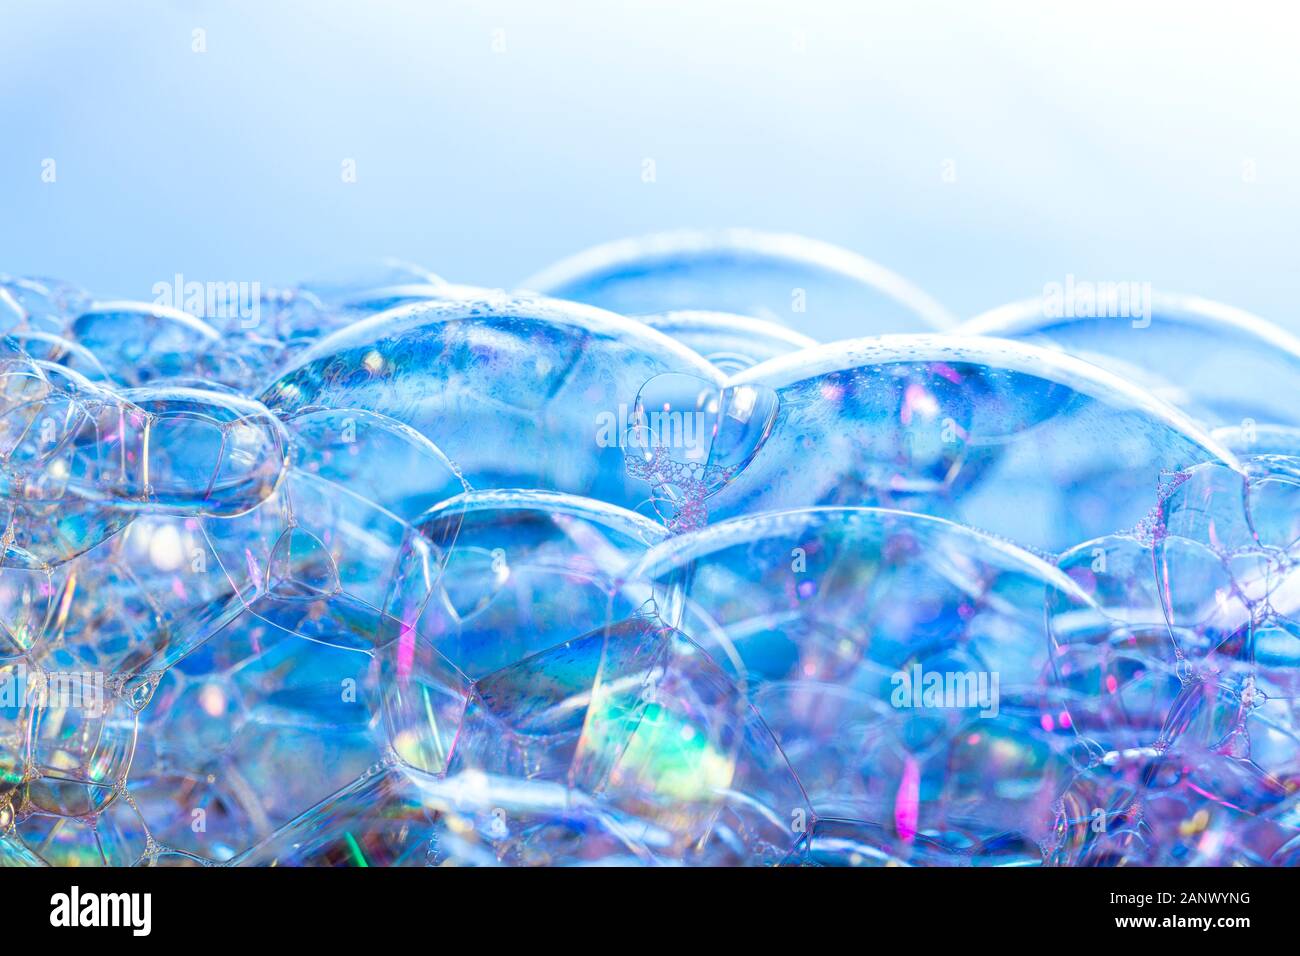 Kreative Zusammenfassung Hintergrund von bunten Blasen Struktur in Blau - magenta Töne Stockfoto